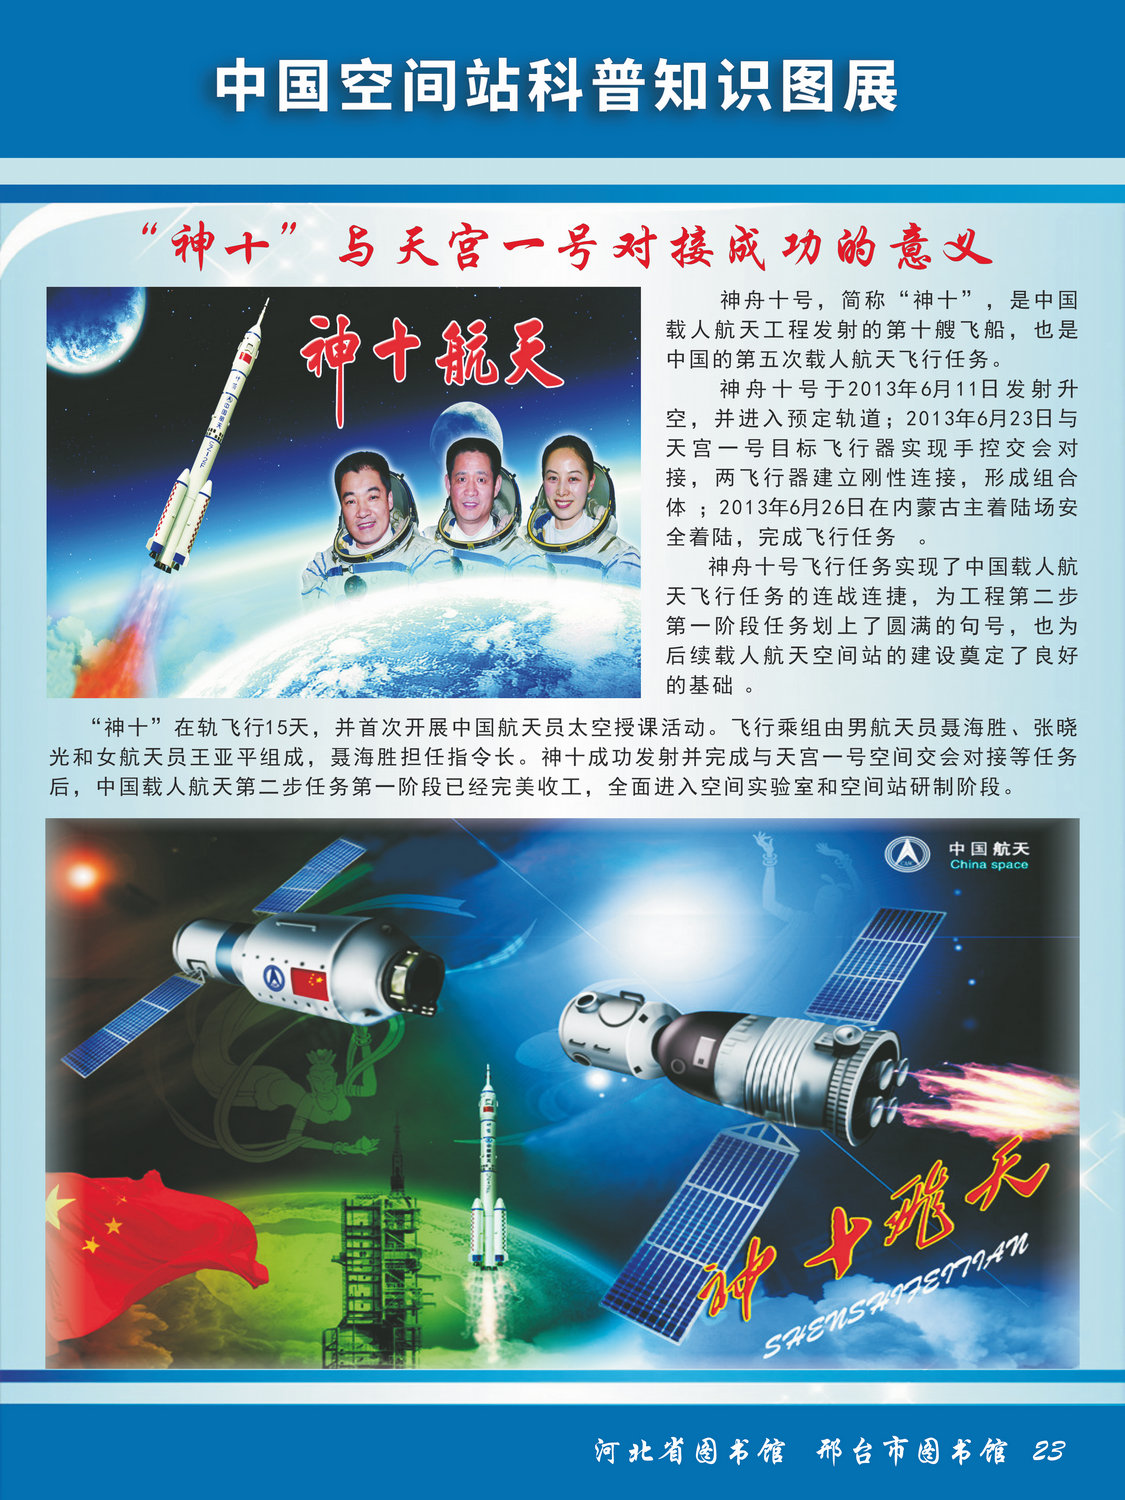 中国空间站科普知识图文展_图23